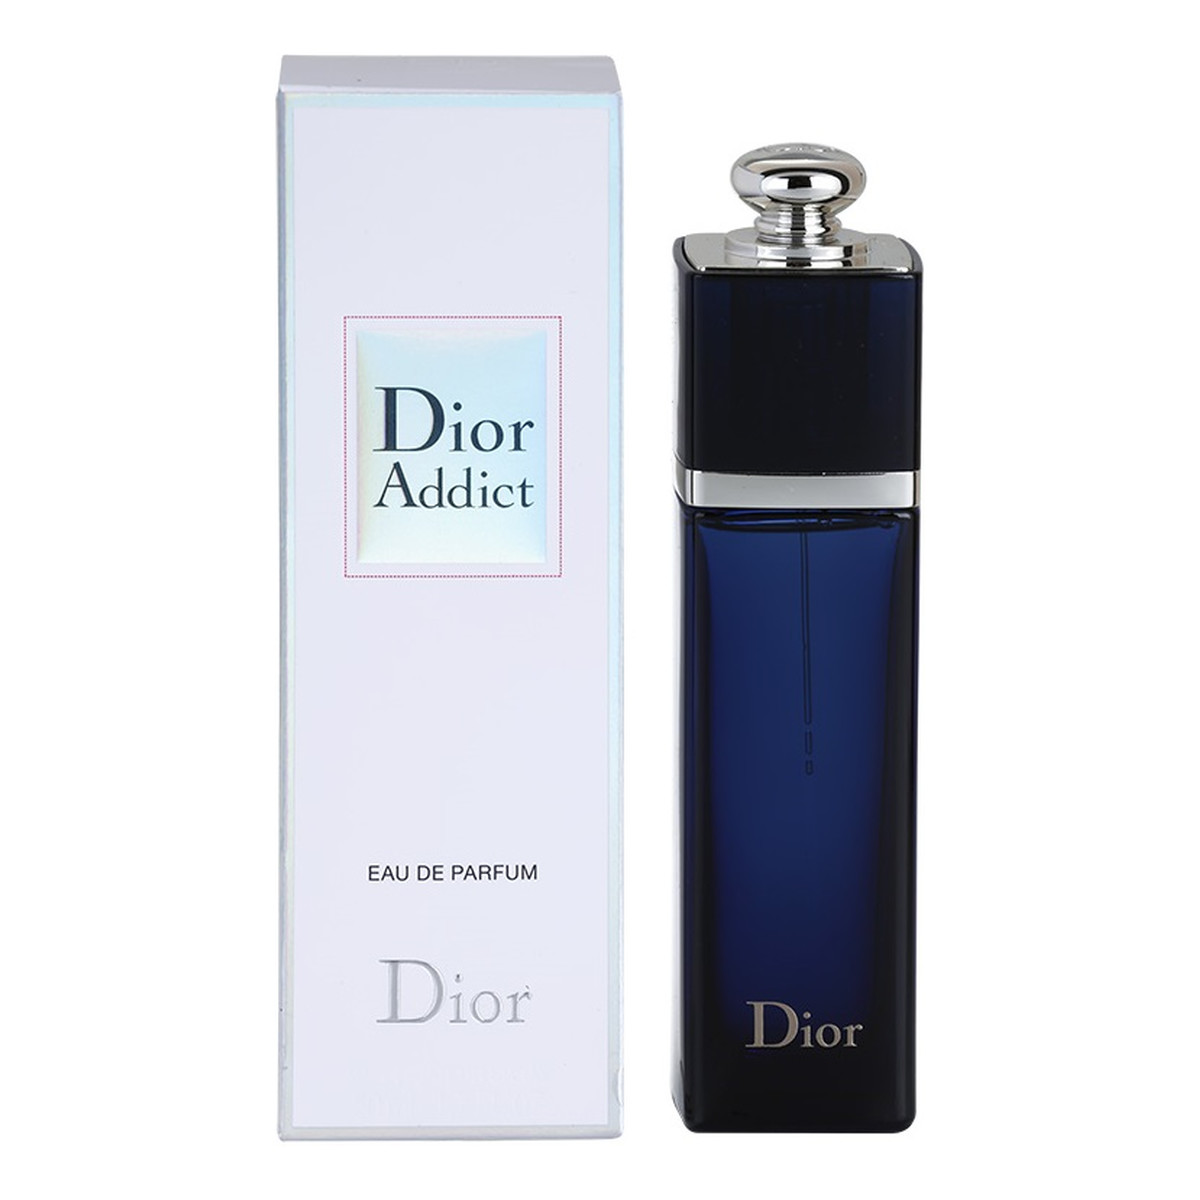 Dior Addict woda perfumowana dla kobiet 50ml